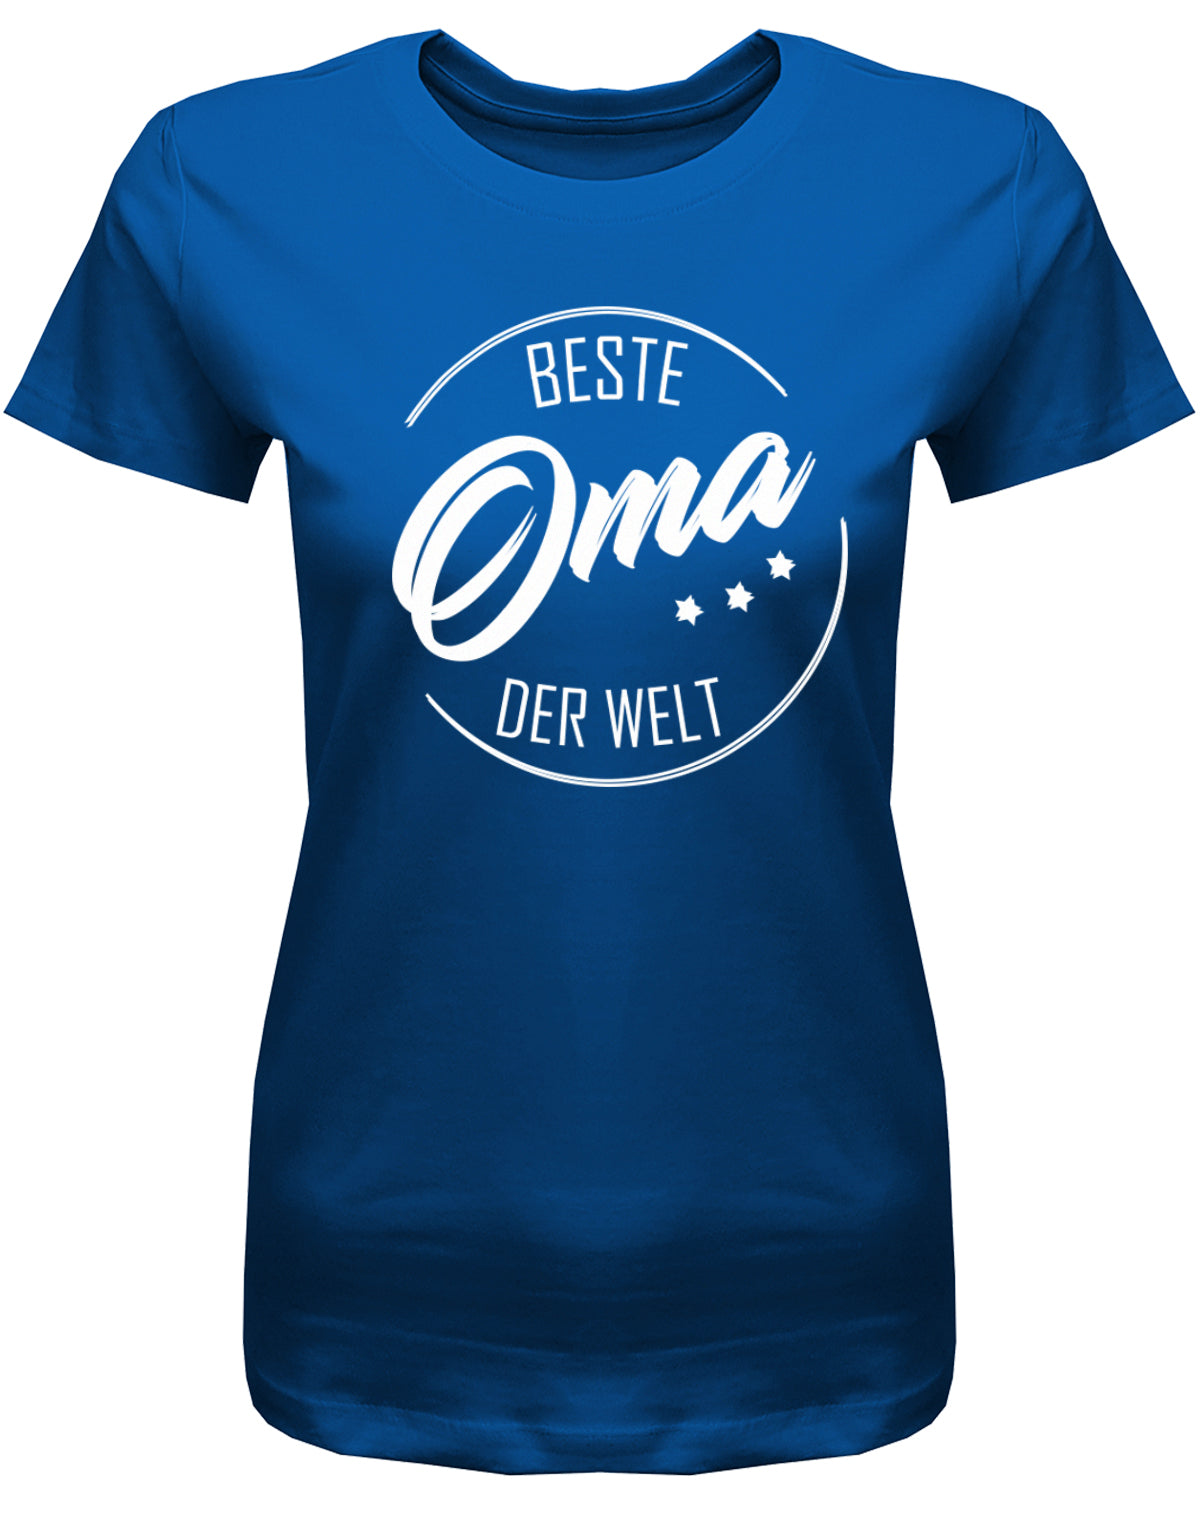 Beste Oma der Welt-T-Shirt Damen-Geschenk-royalblau